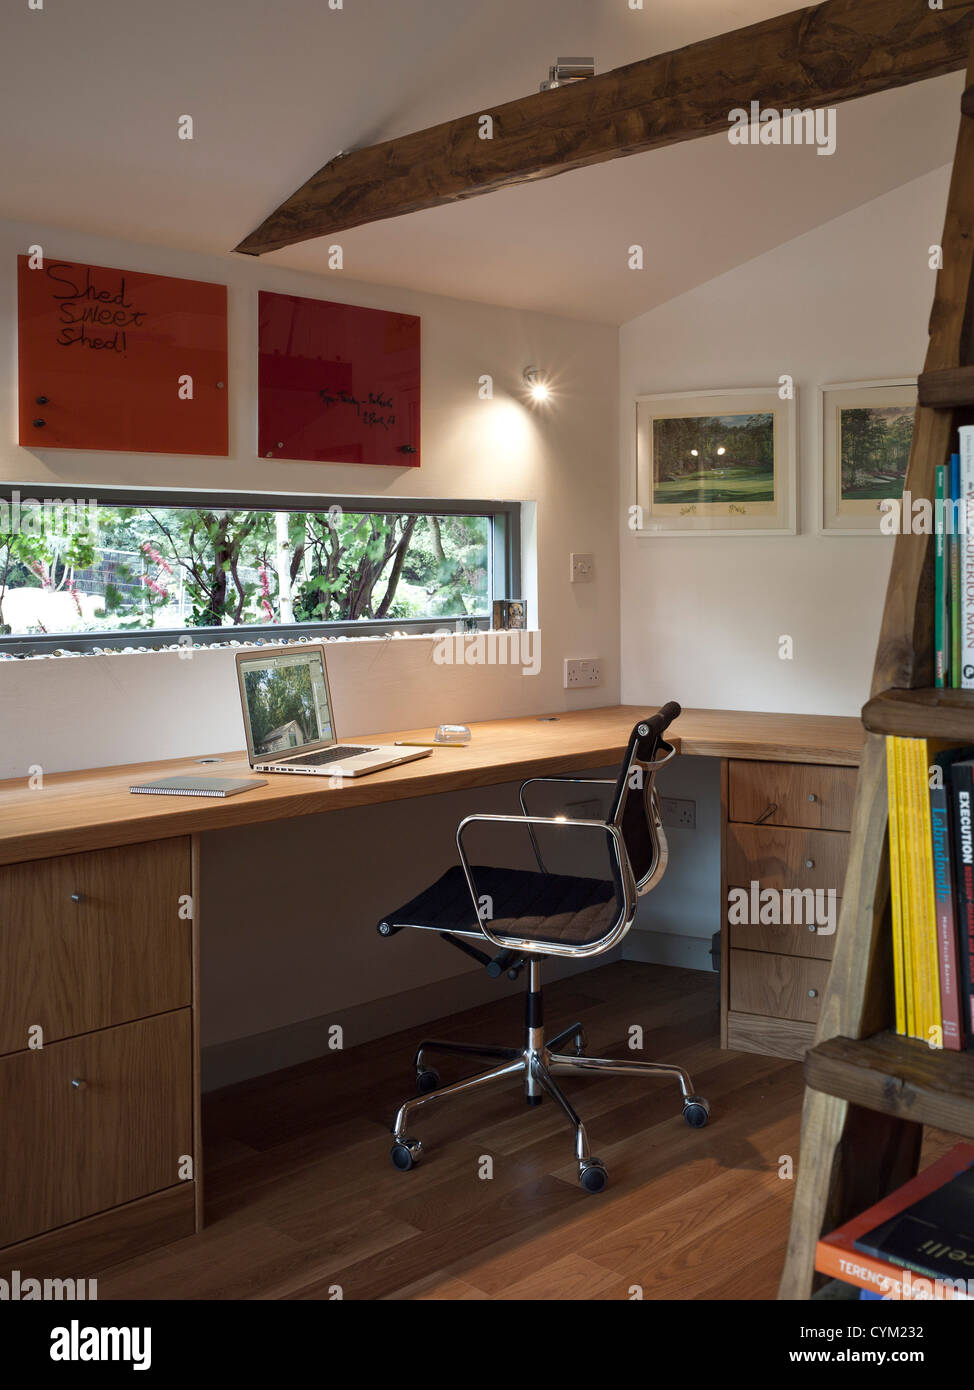 Garten, Büro, Berkhamsted, Vereinigtes Königreich. Architekt: SDP Design, 2012. Innenraum-Detail mit Schreibtisch, Stuhl und gewinnen Stockfoto